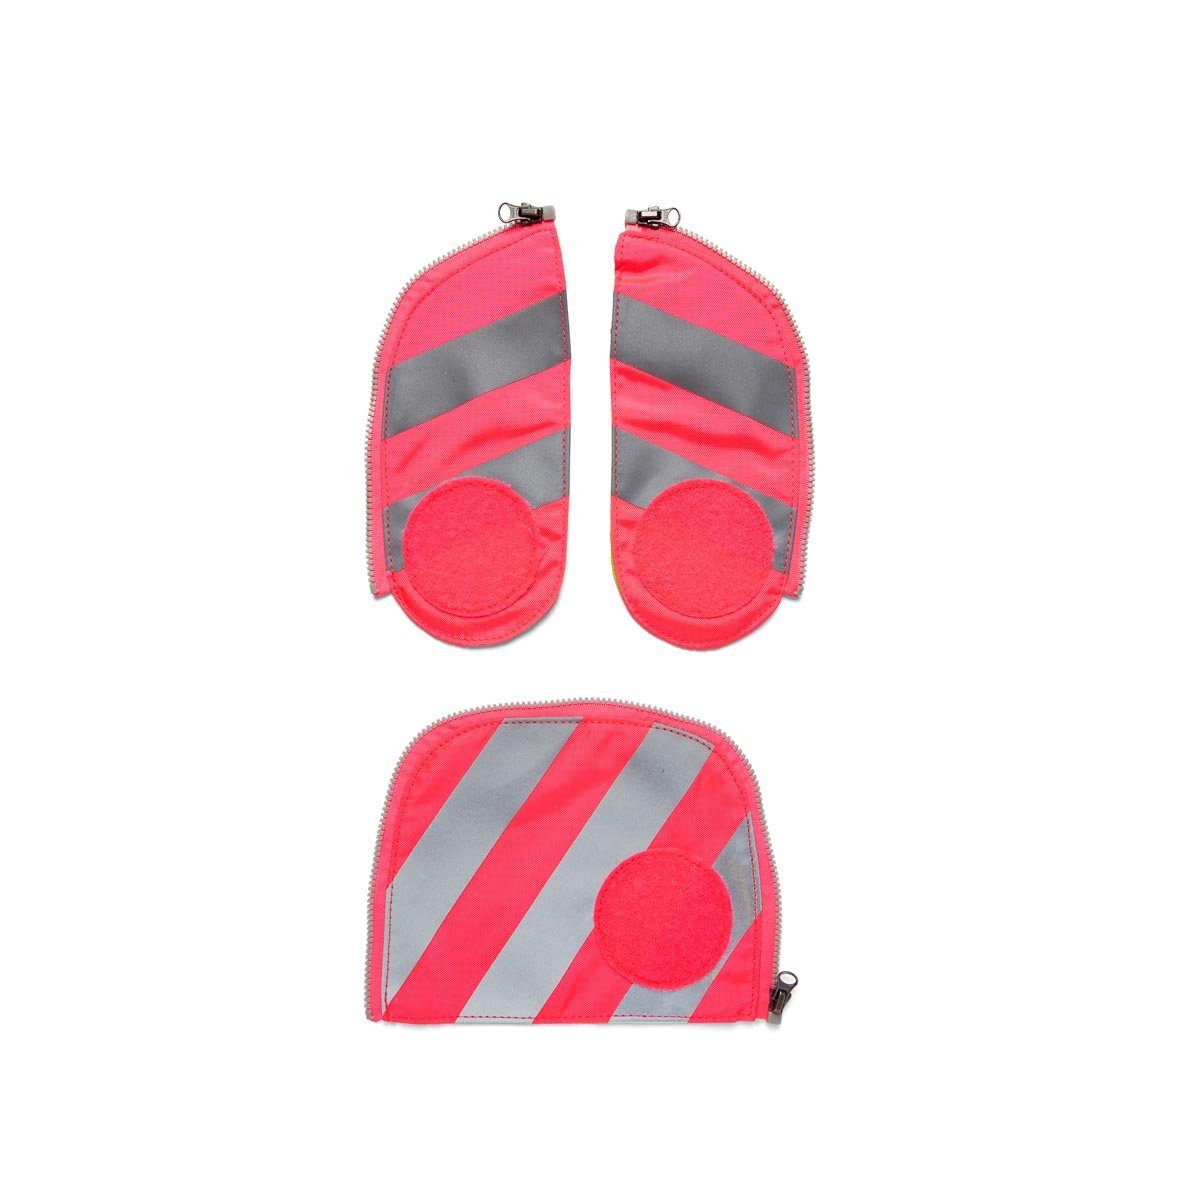 für Reflektorstreifen, ergobag Schulranzen 2019 Zip-Set Fluo mit alle Sicherheitsset Schultaschenmodelle Pink ab 001-511